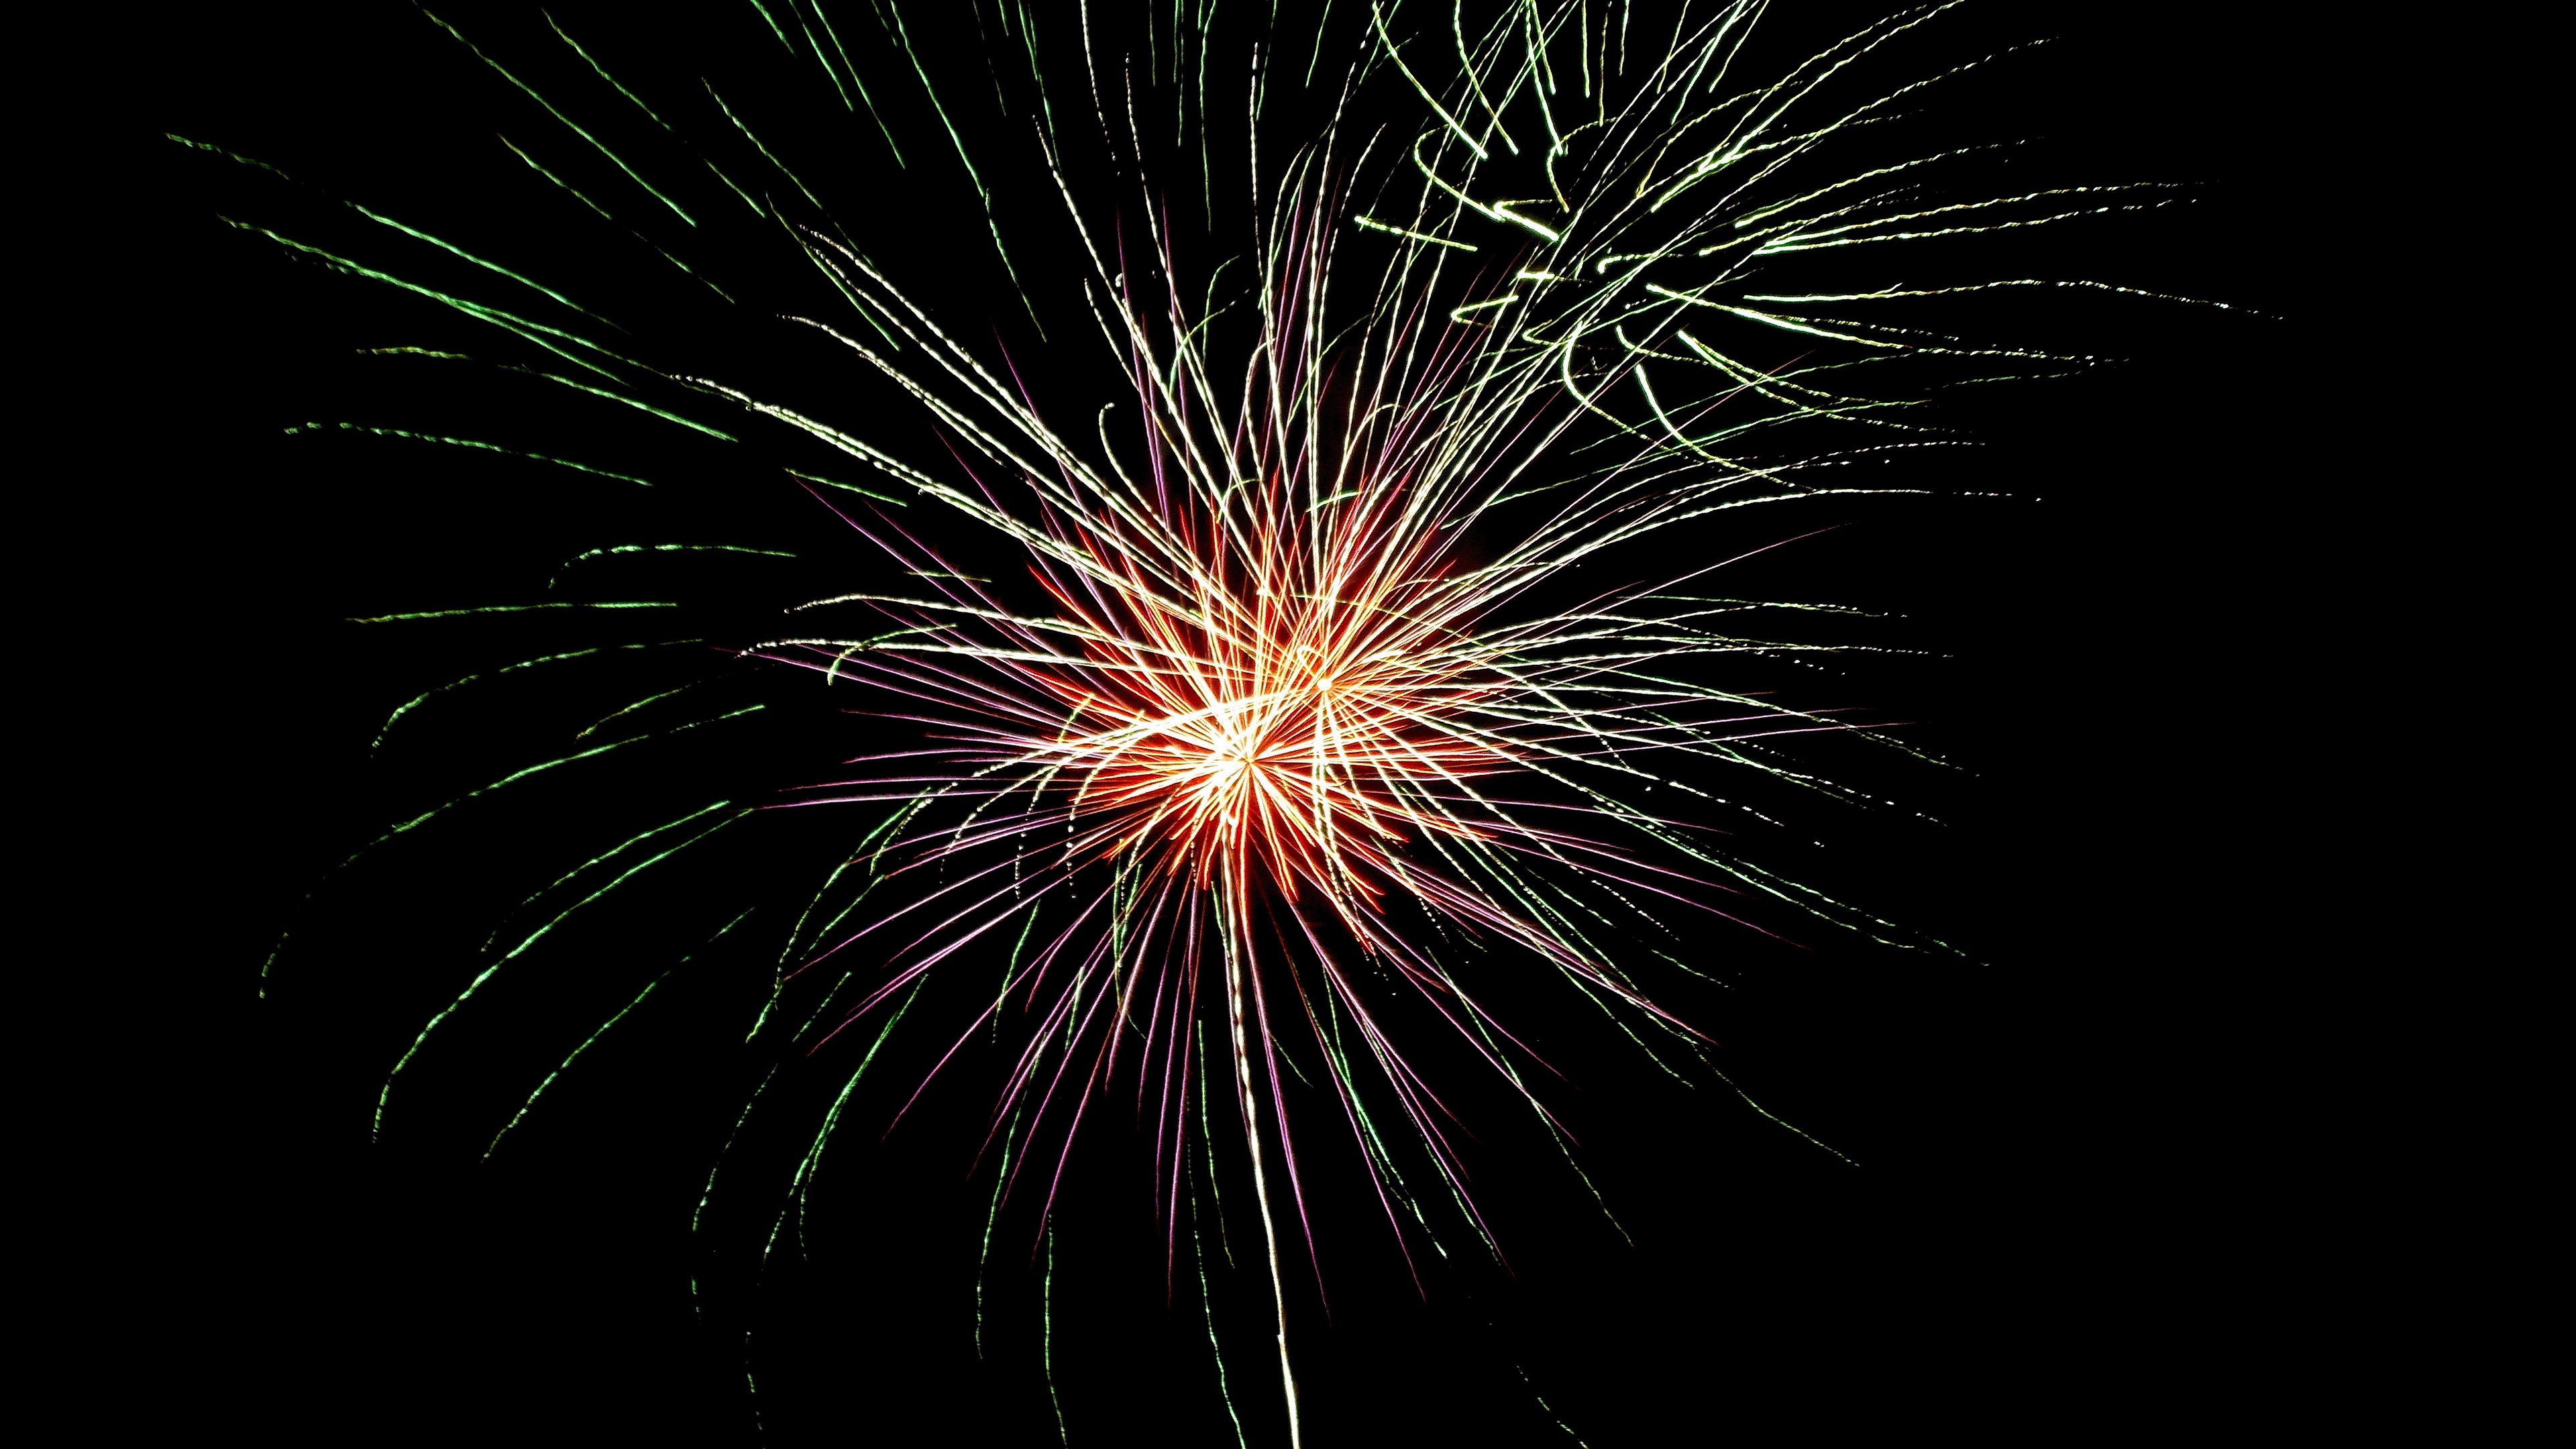 Download wallpaper 3840x2160 fireworks, celebration, explosion 4k